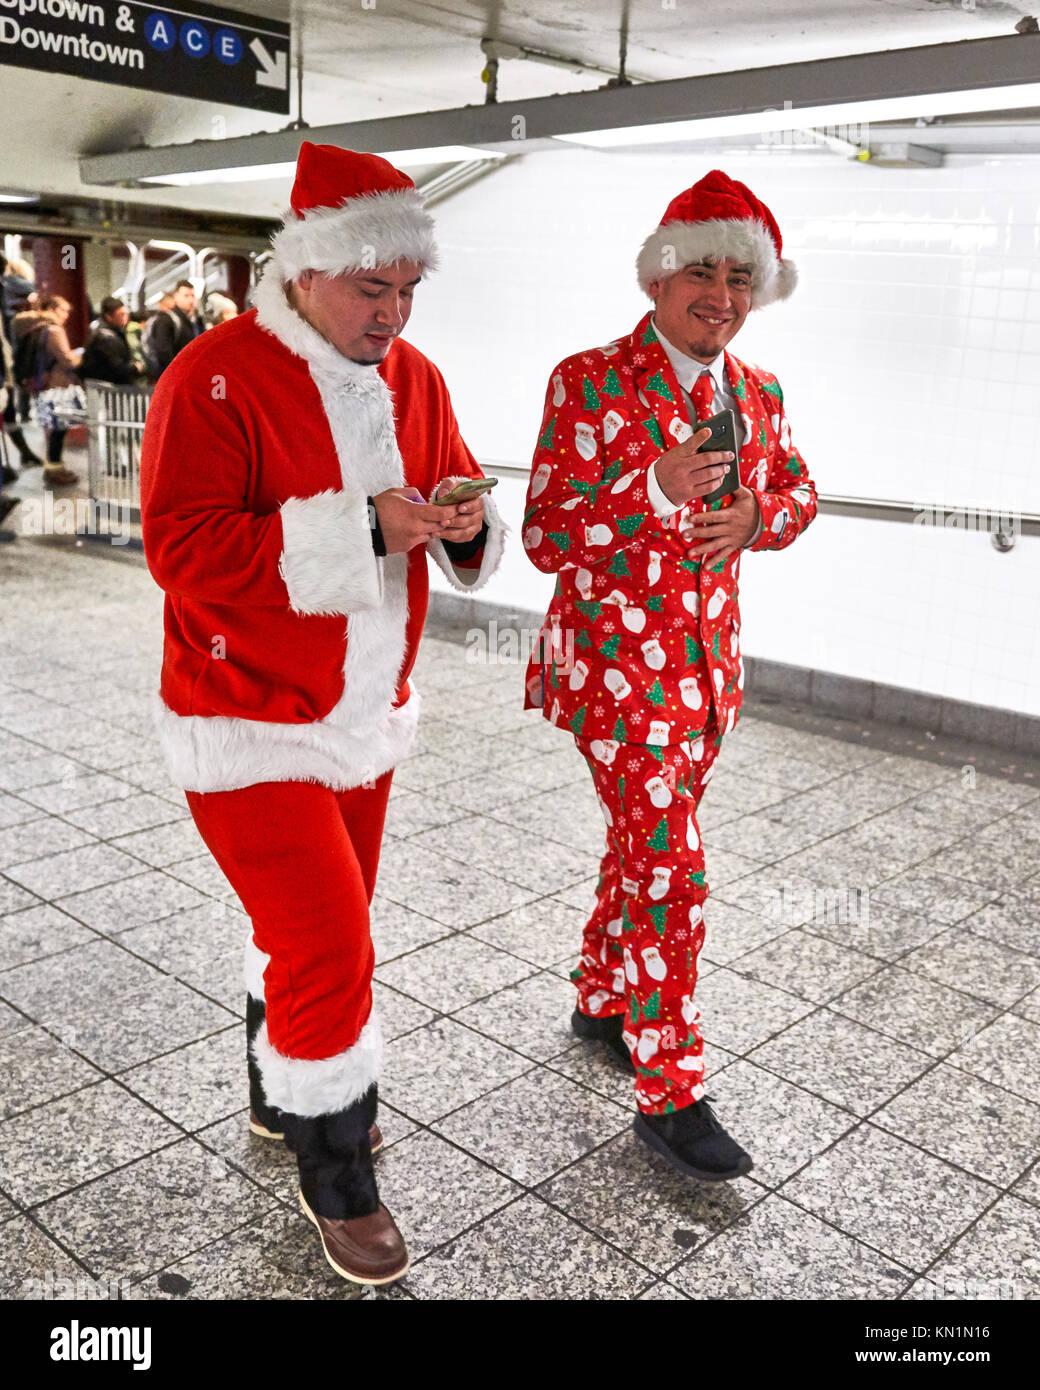 New York, États-Unis, 9 déc 2017. Les gens déguisés en père Noël à pied à une station de métro à leur façon de rejoindre une antacon "fête" foule rassemblement. Photo par Enrique Shore/Alamy Live News Banque D'Images